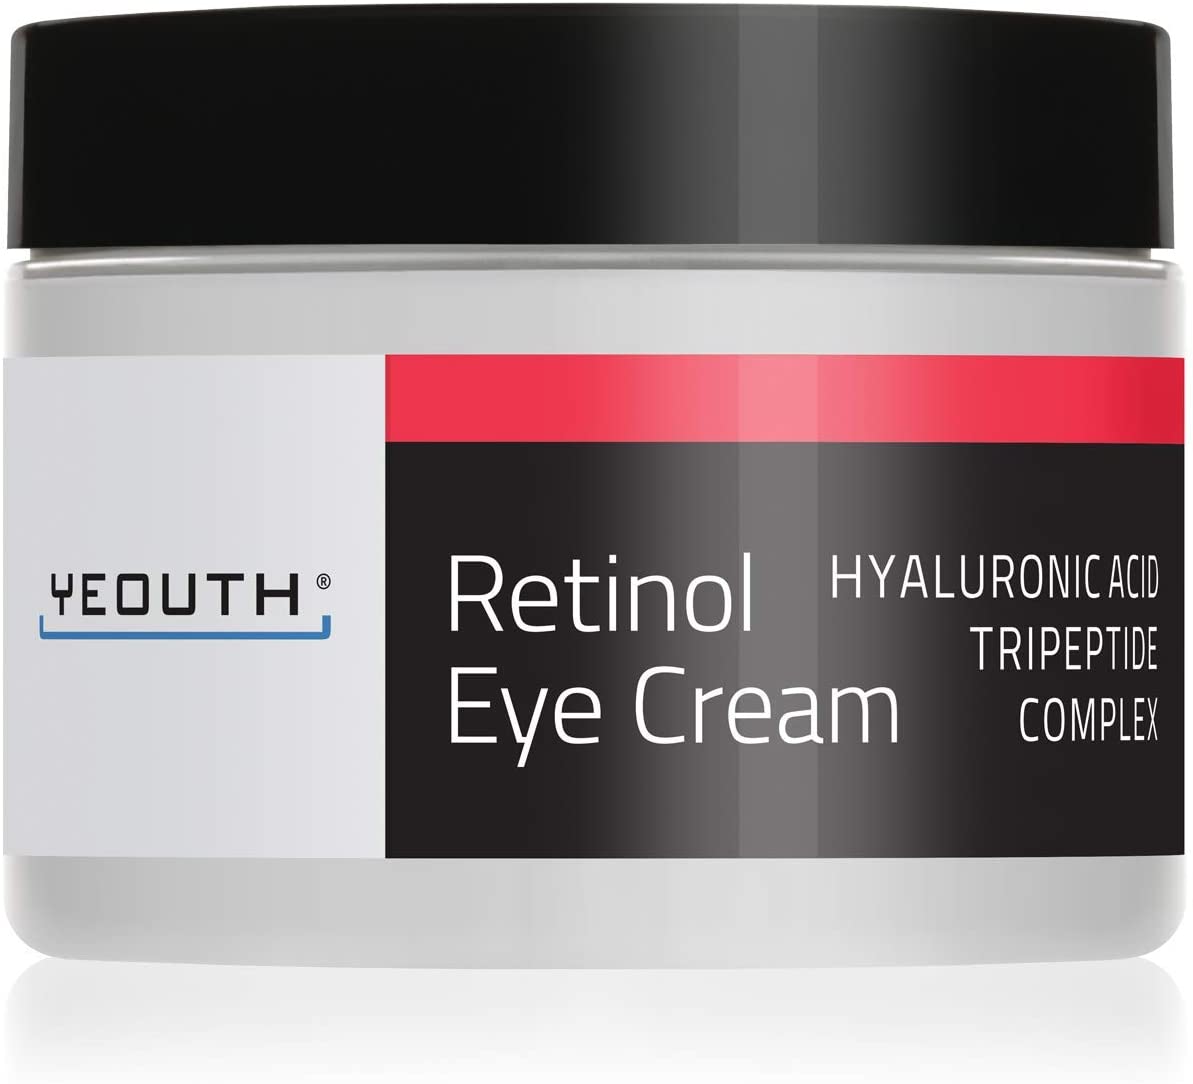 Retinol Eye Cream 